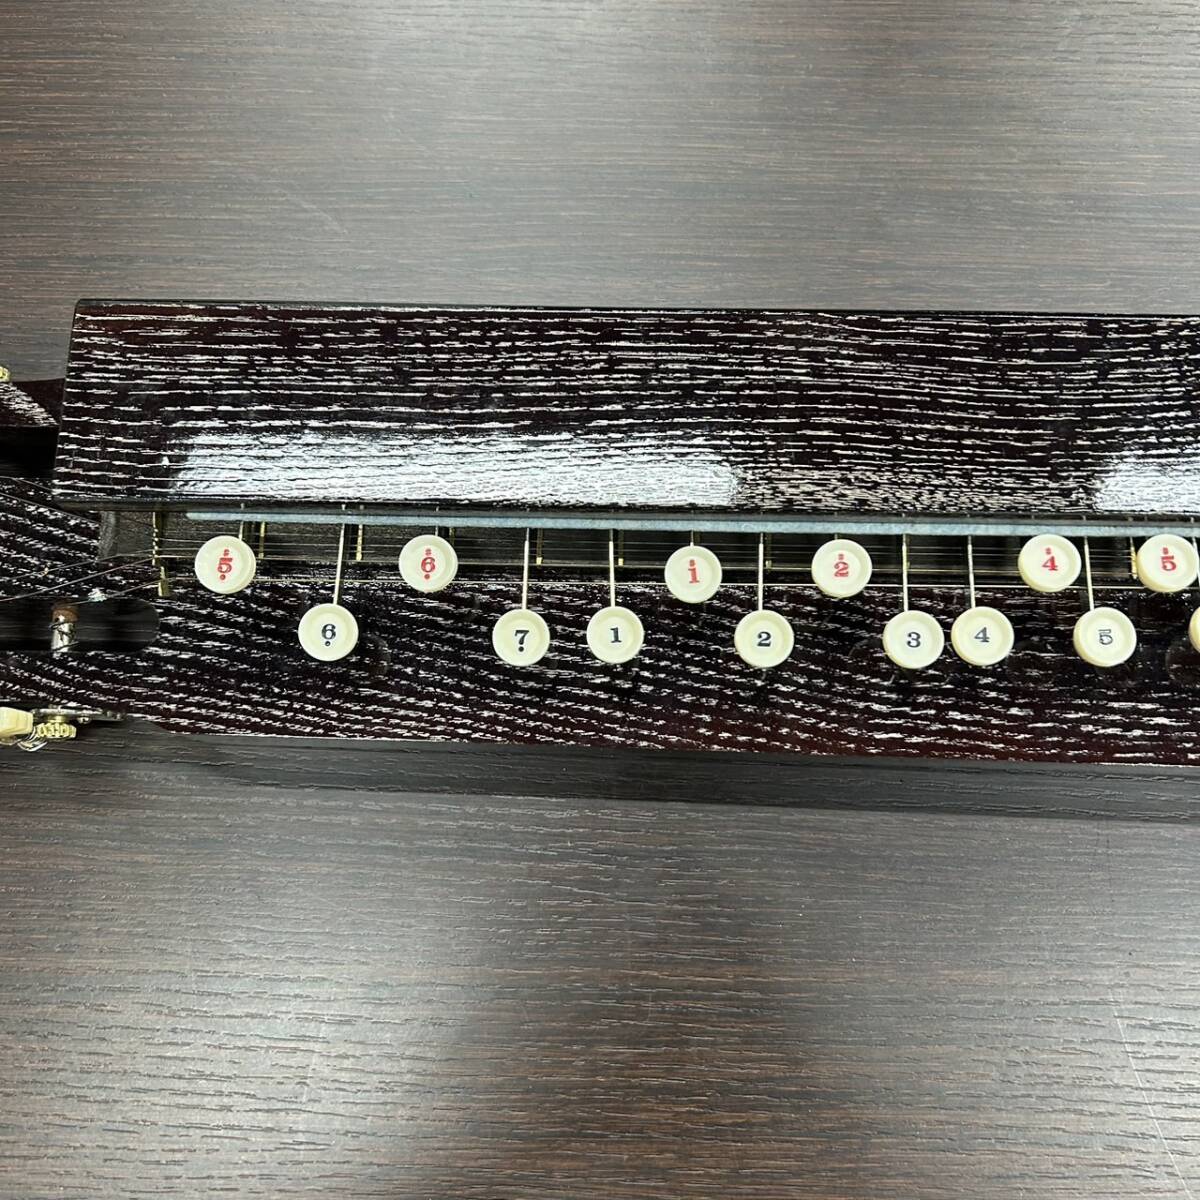 **Nardannaru Dan Taisho koto с футляром традиционные японские музыкальные инструменты струнные инструменты жесткий чехол кото ключ струна #3753**